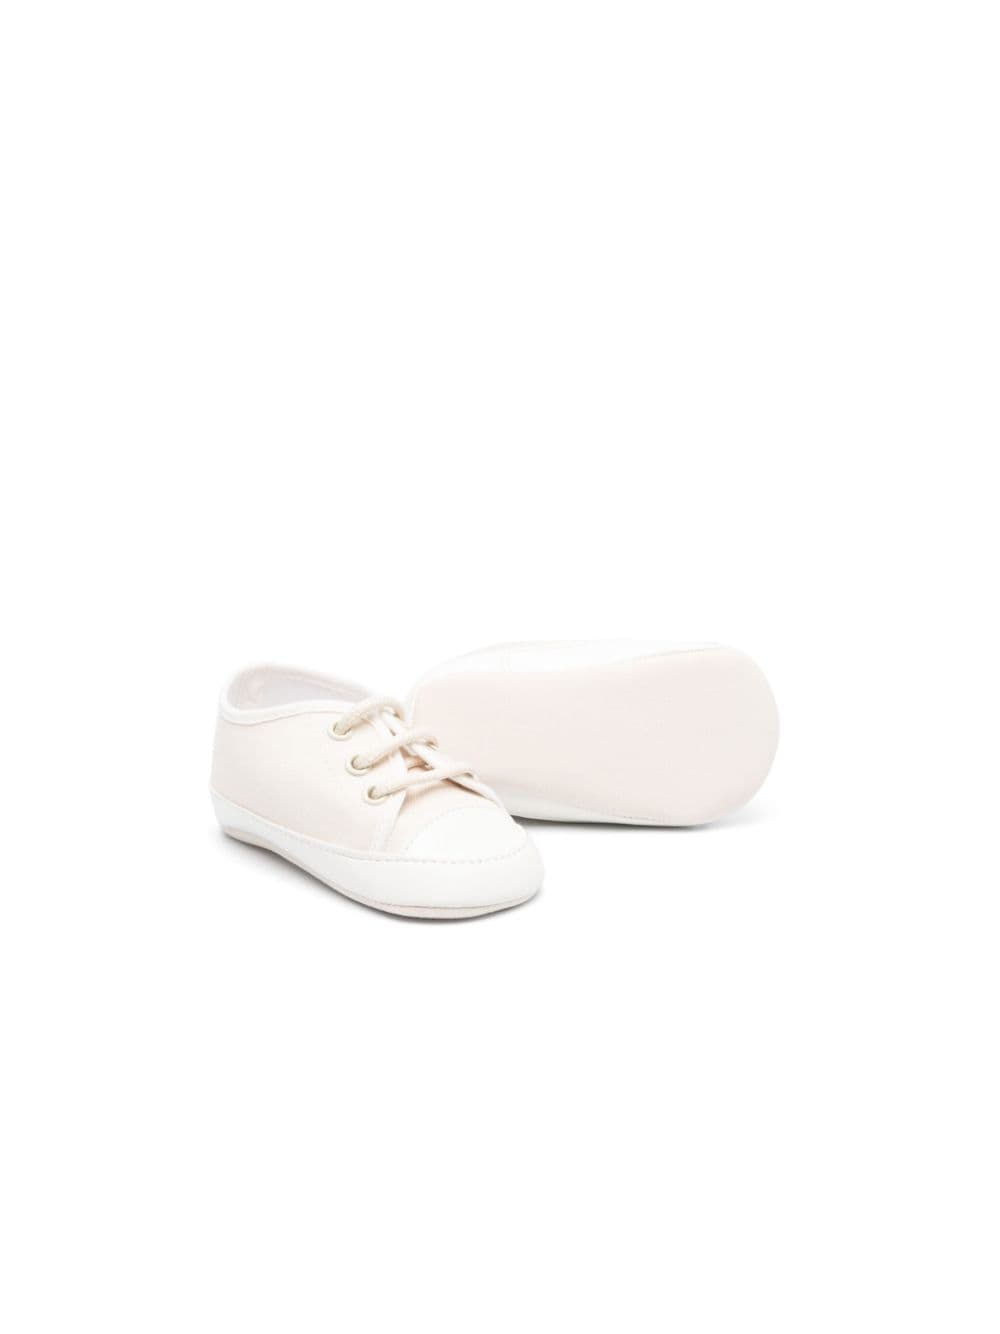 Colorichiari two-tone lace-up shoes - Beige